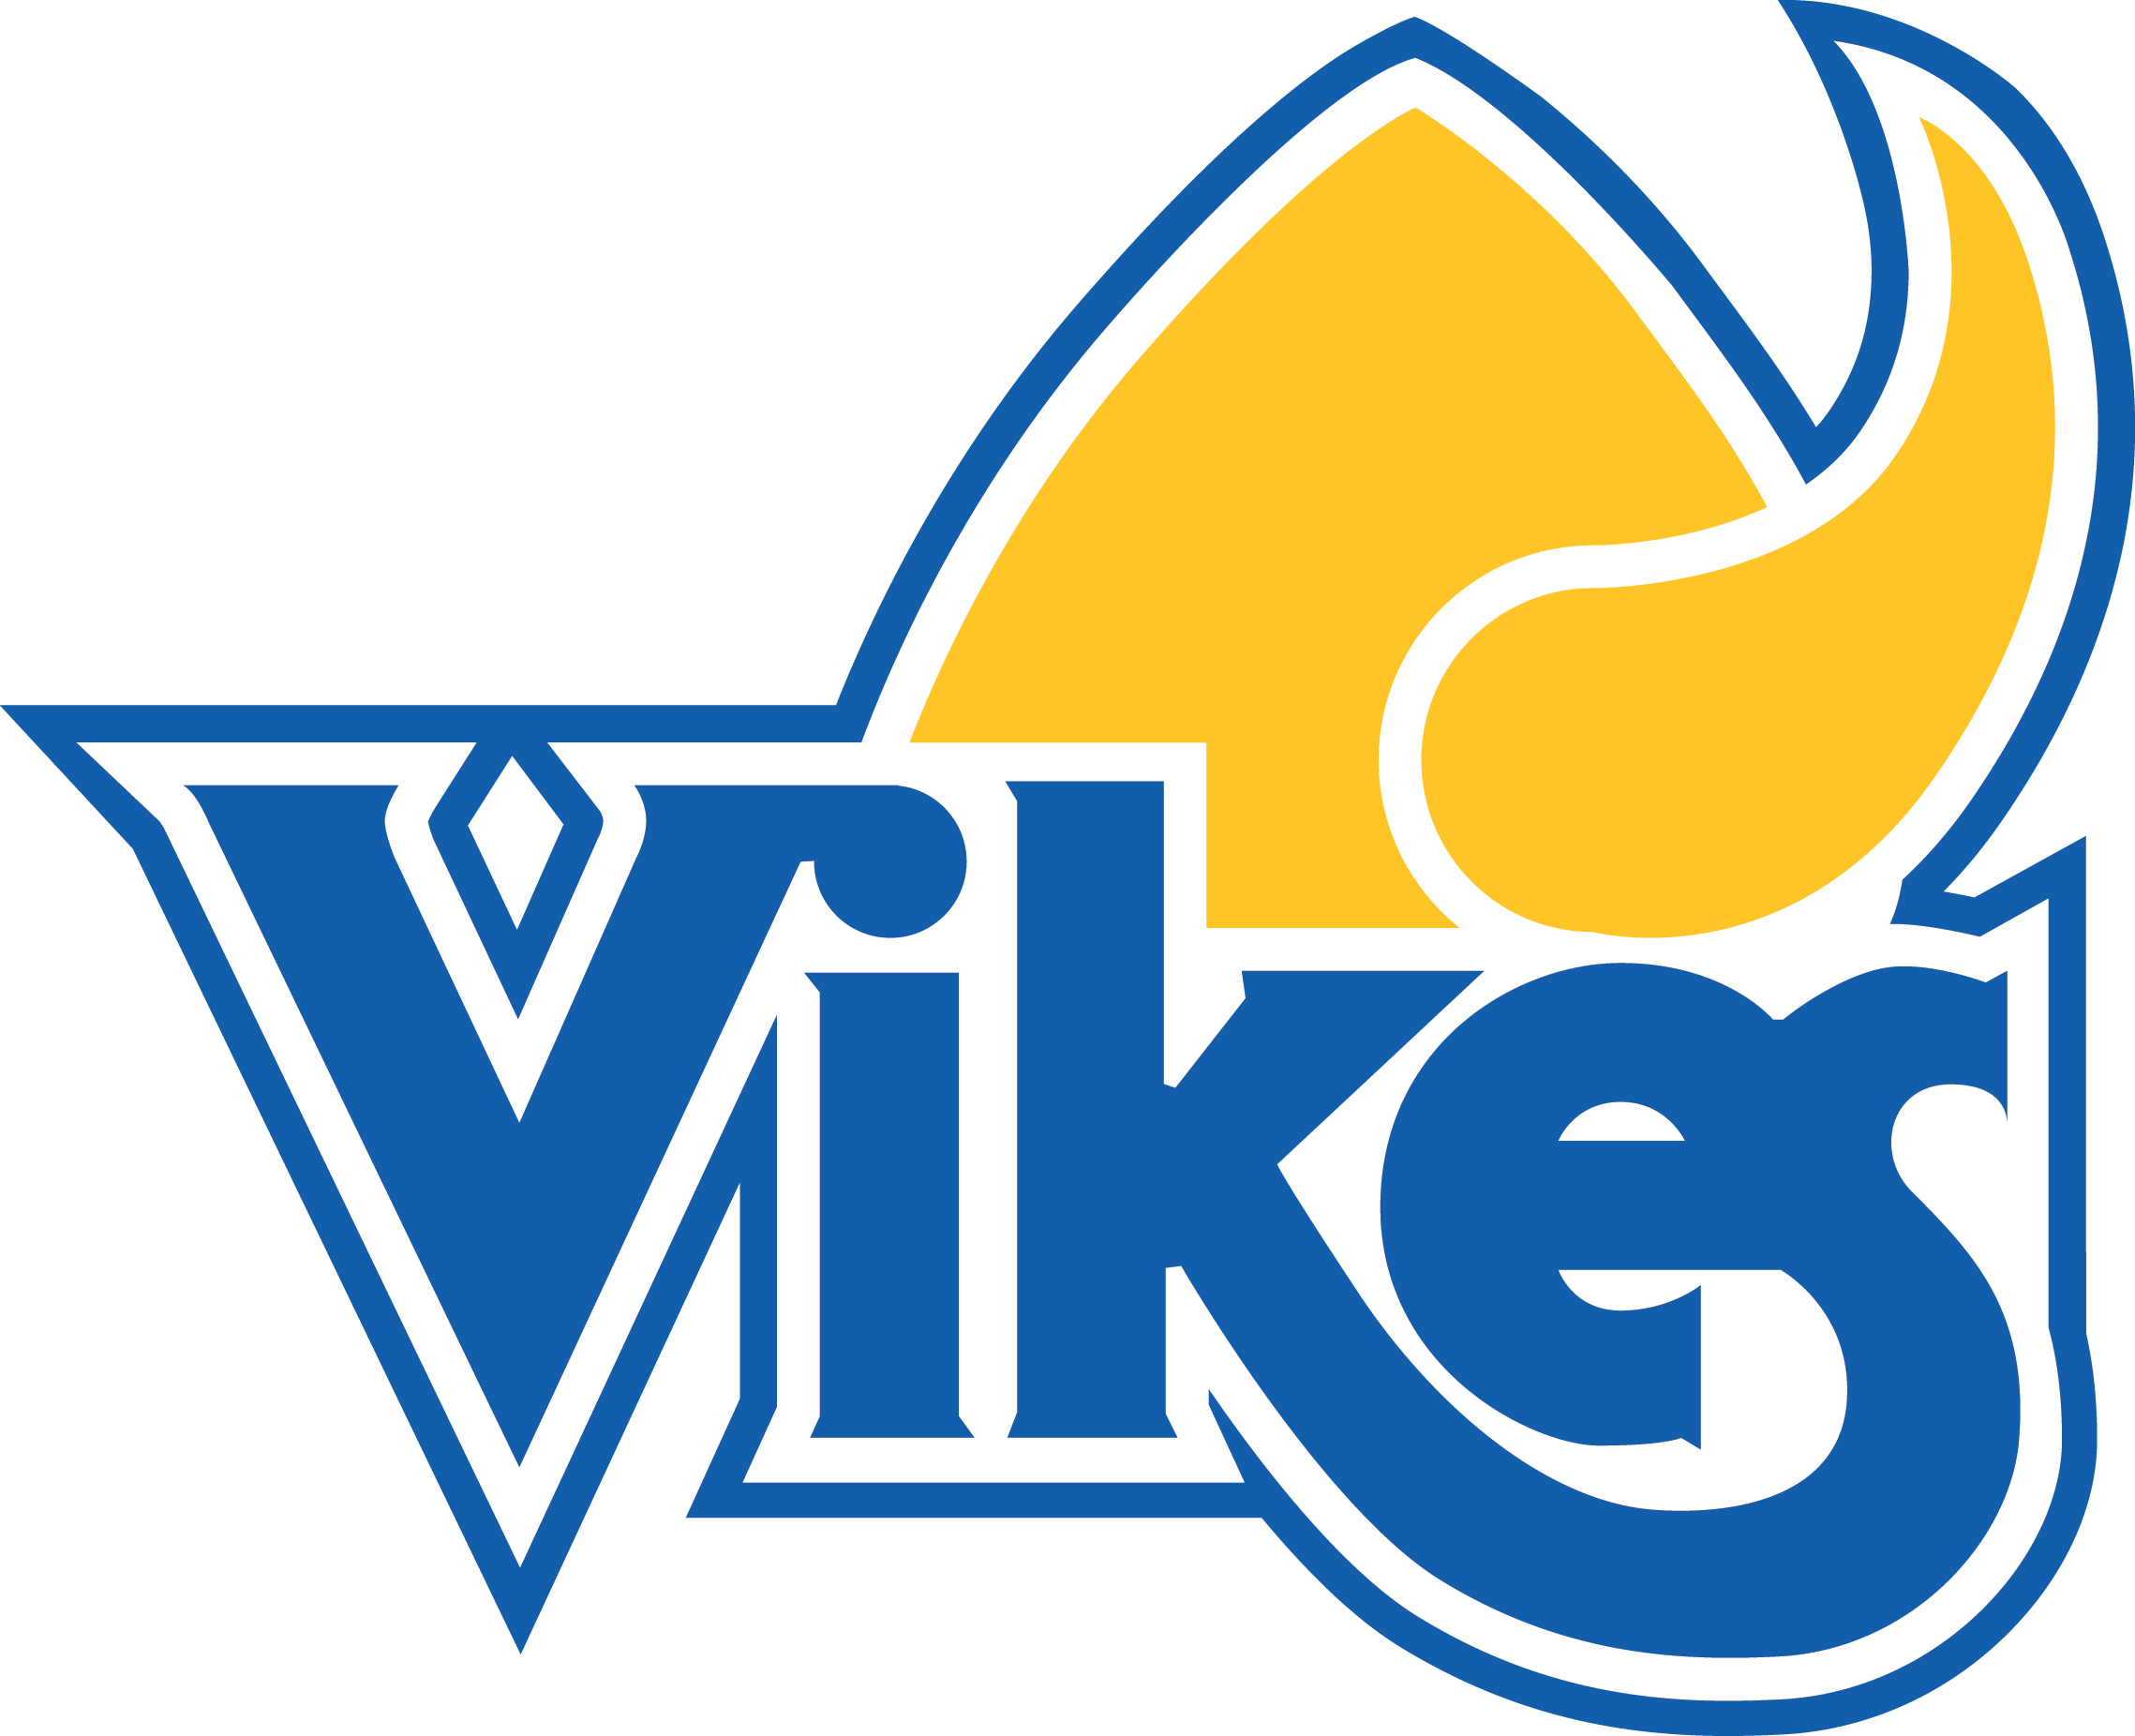 2012 Retro Vikes - University Of Victoria Vikes (2278x1852)